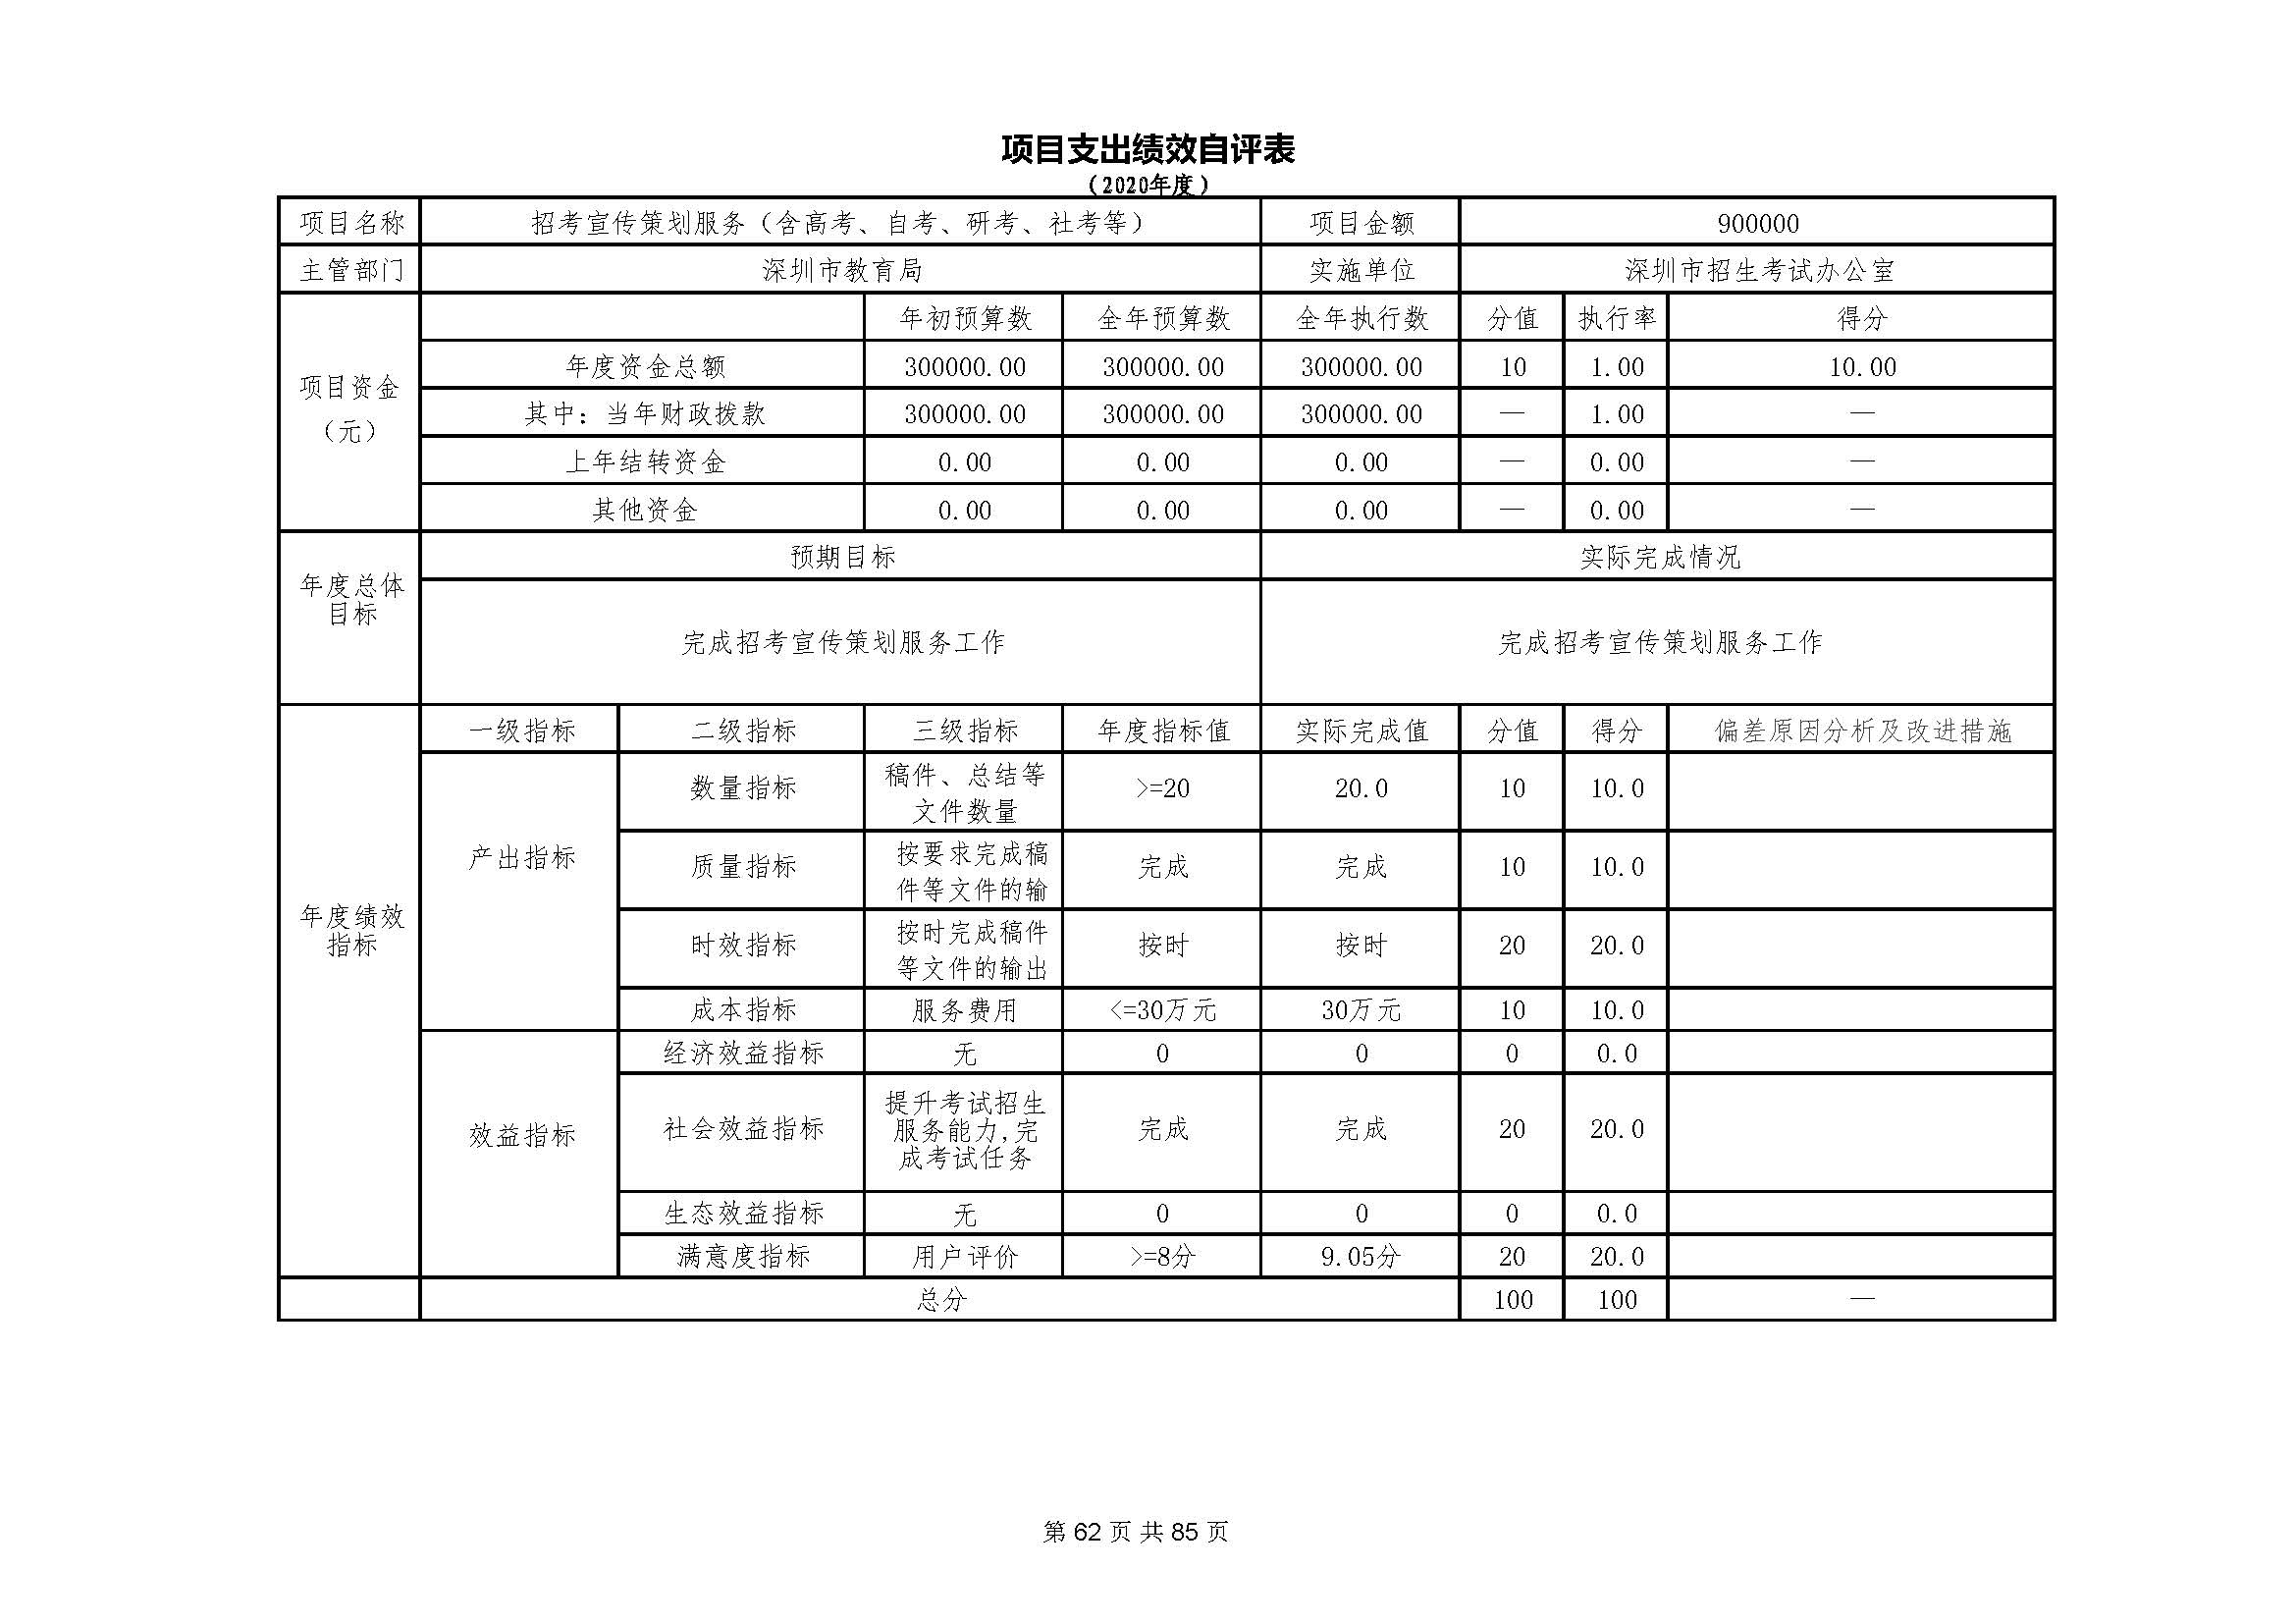 深圳市招生考试办公室2020年度部门决算_页面_63.jpg